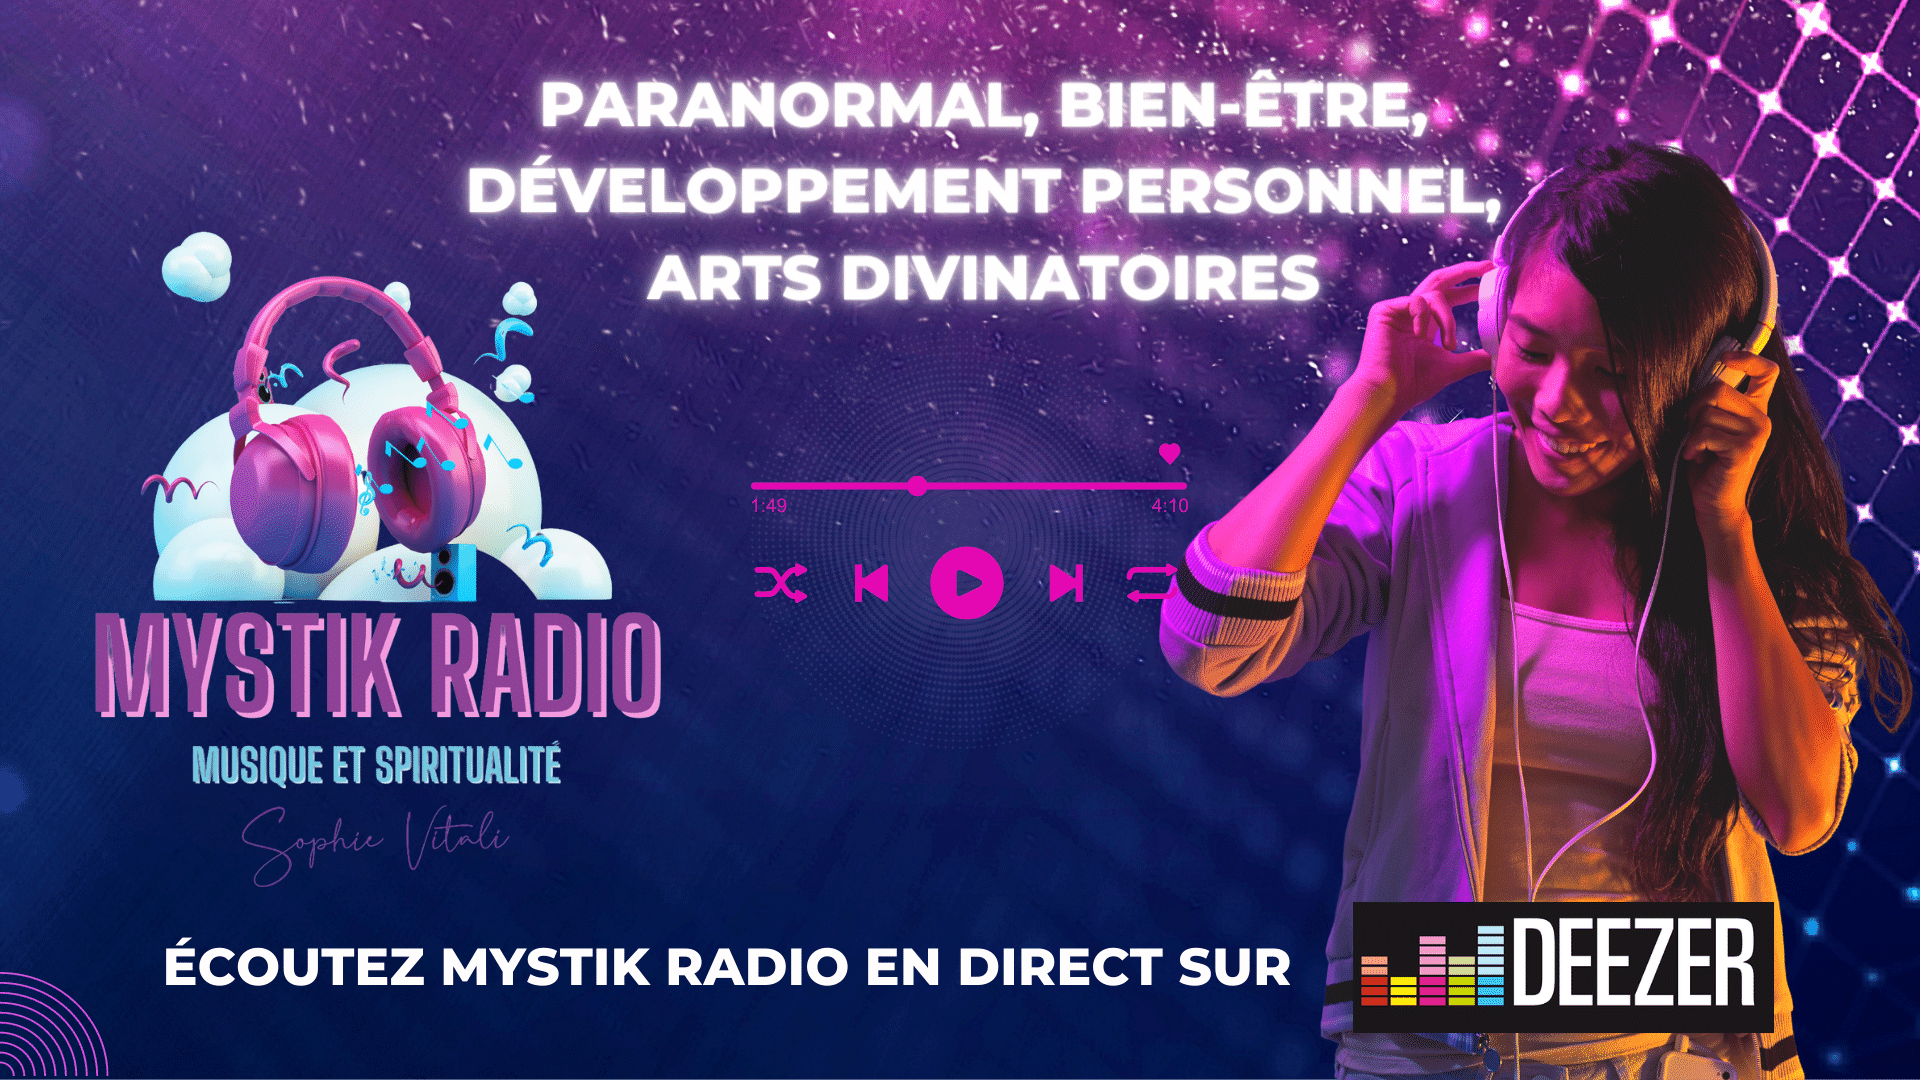 Mystik Radio : voyance, paranormal, bien-être, infos, cinéma, musique, spiritualité, fun | Sophie Vitali